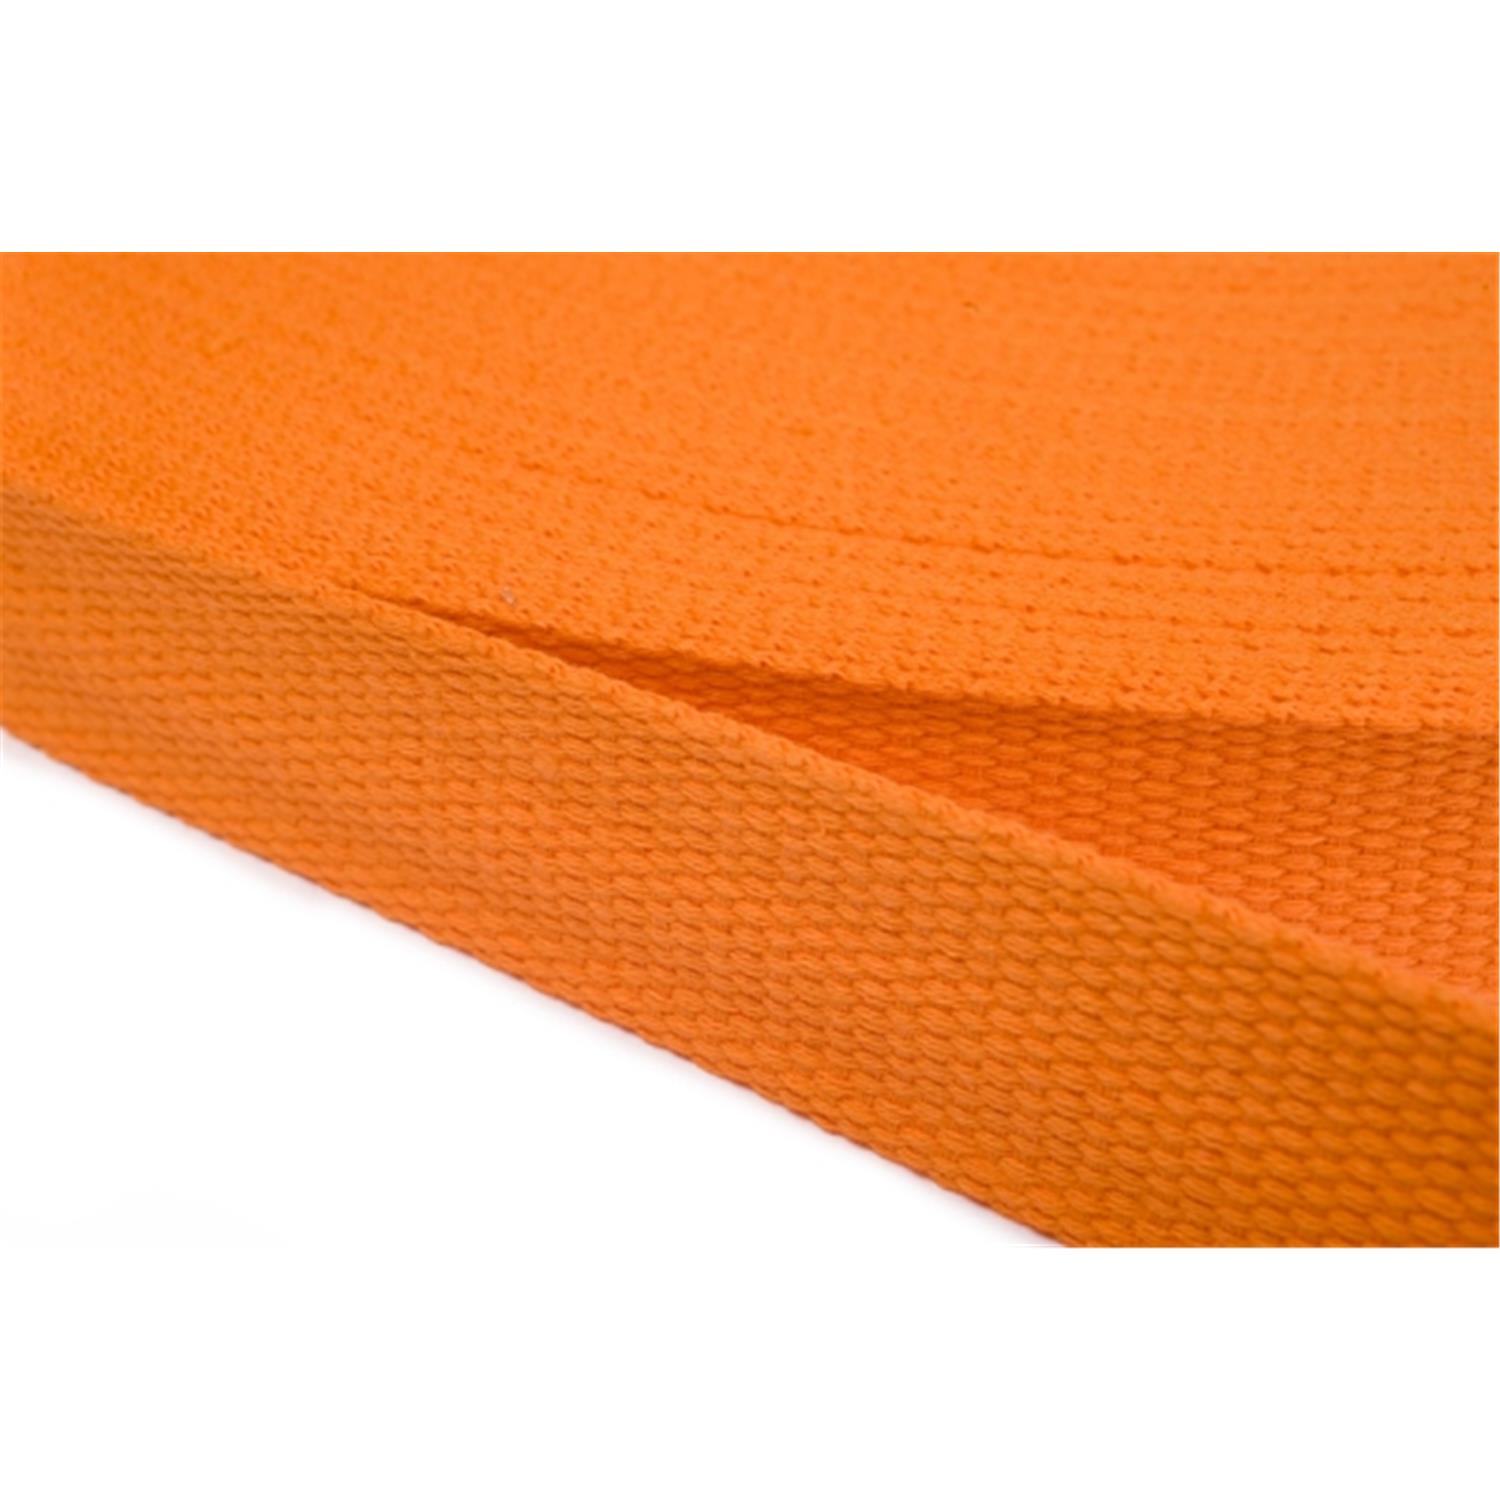 Gurtband aus Baumwolle 30mm in 20 Farben 06 - orange 12 Meter